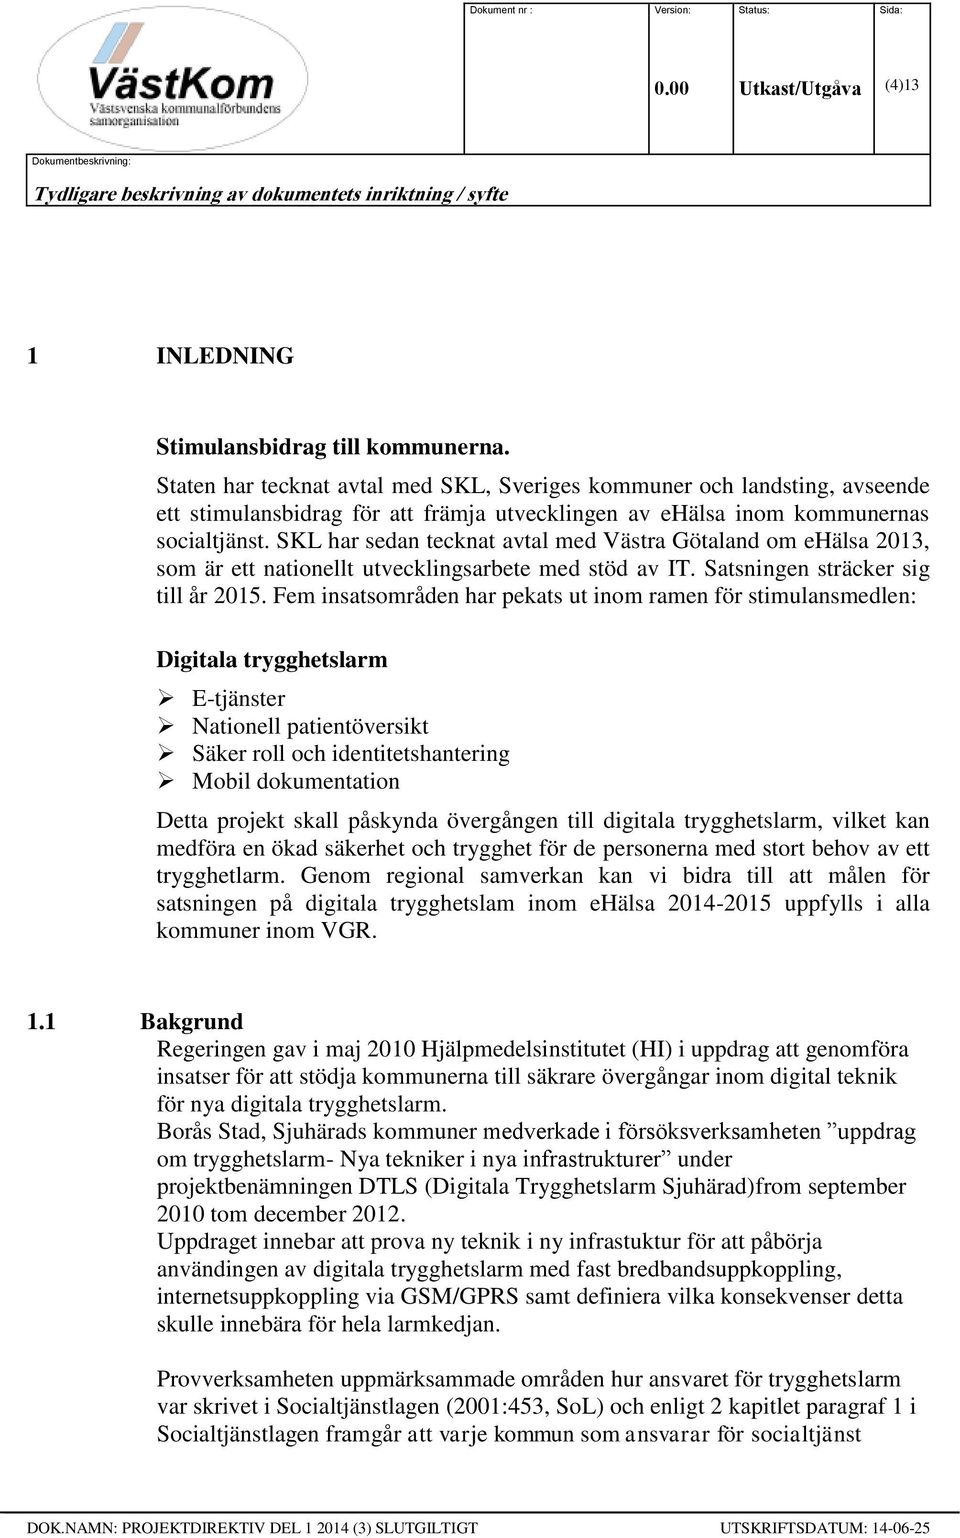 SKL har sedan tecknat avtal med Västra Götaland om ehälsa 2013, som är ett nationellt utvecklingsarbete med stöd av IT. Satsningen sträcker sig till år 2015.